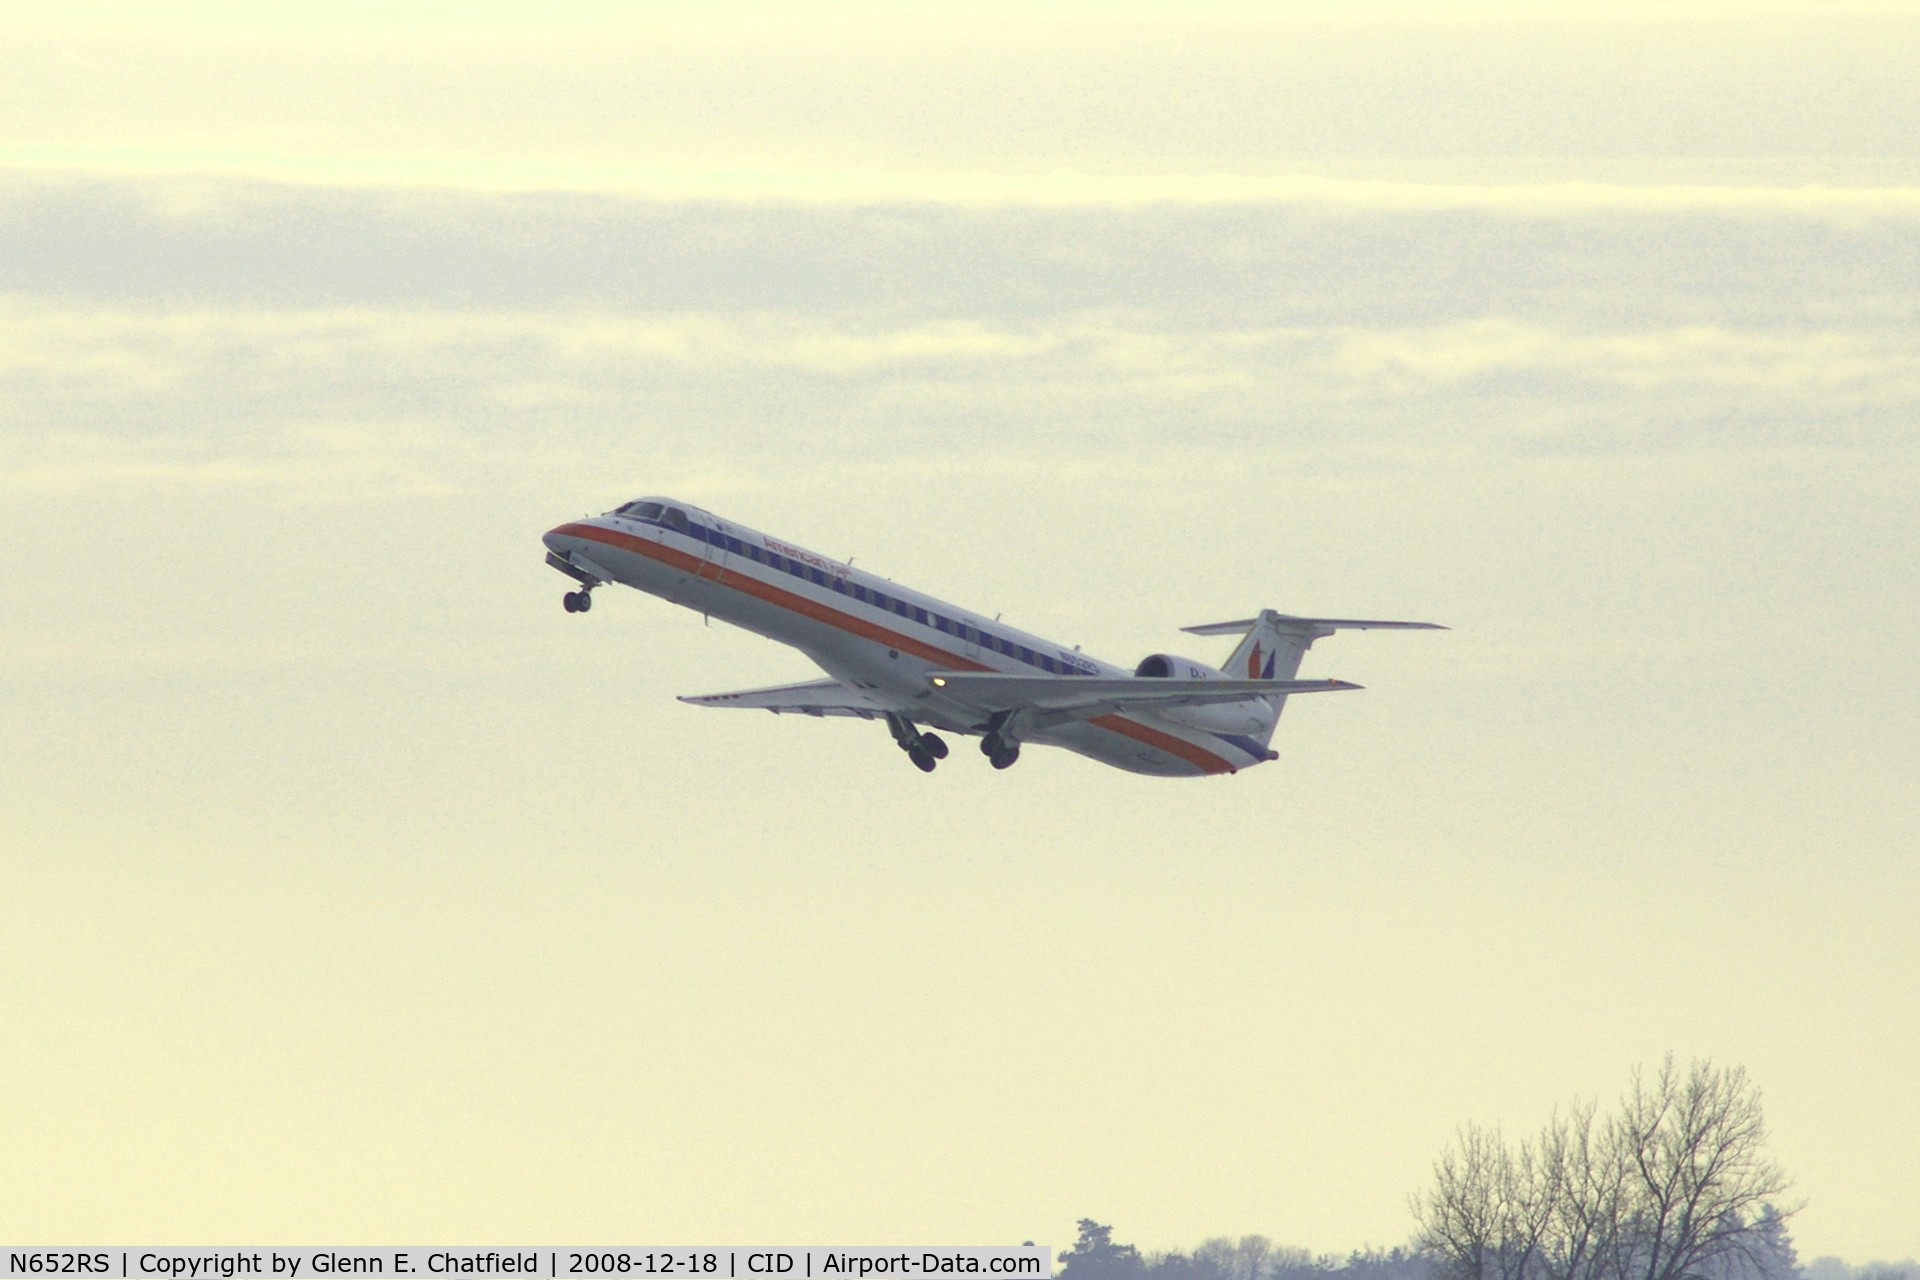 N652RS, 2001 Embraer ERJ-145LR (EMB-145LR) C/N 145432, Departing runway 9 for O'Hare International.